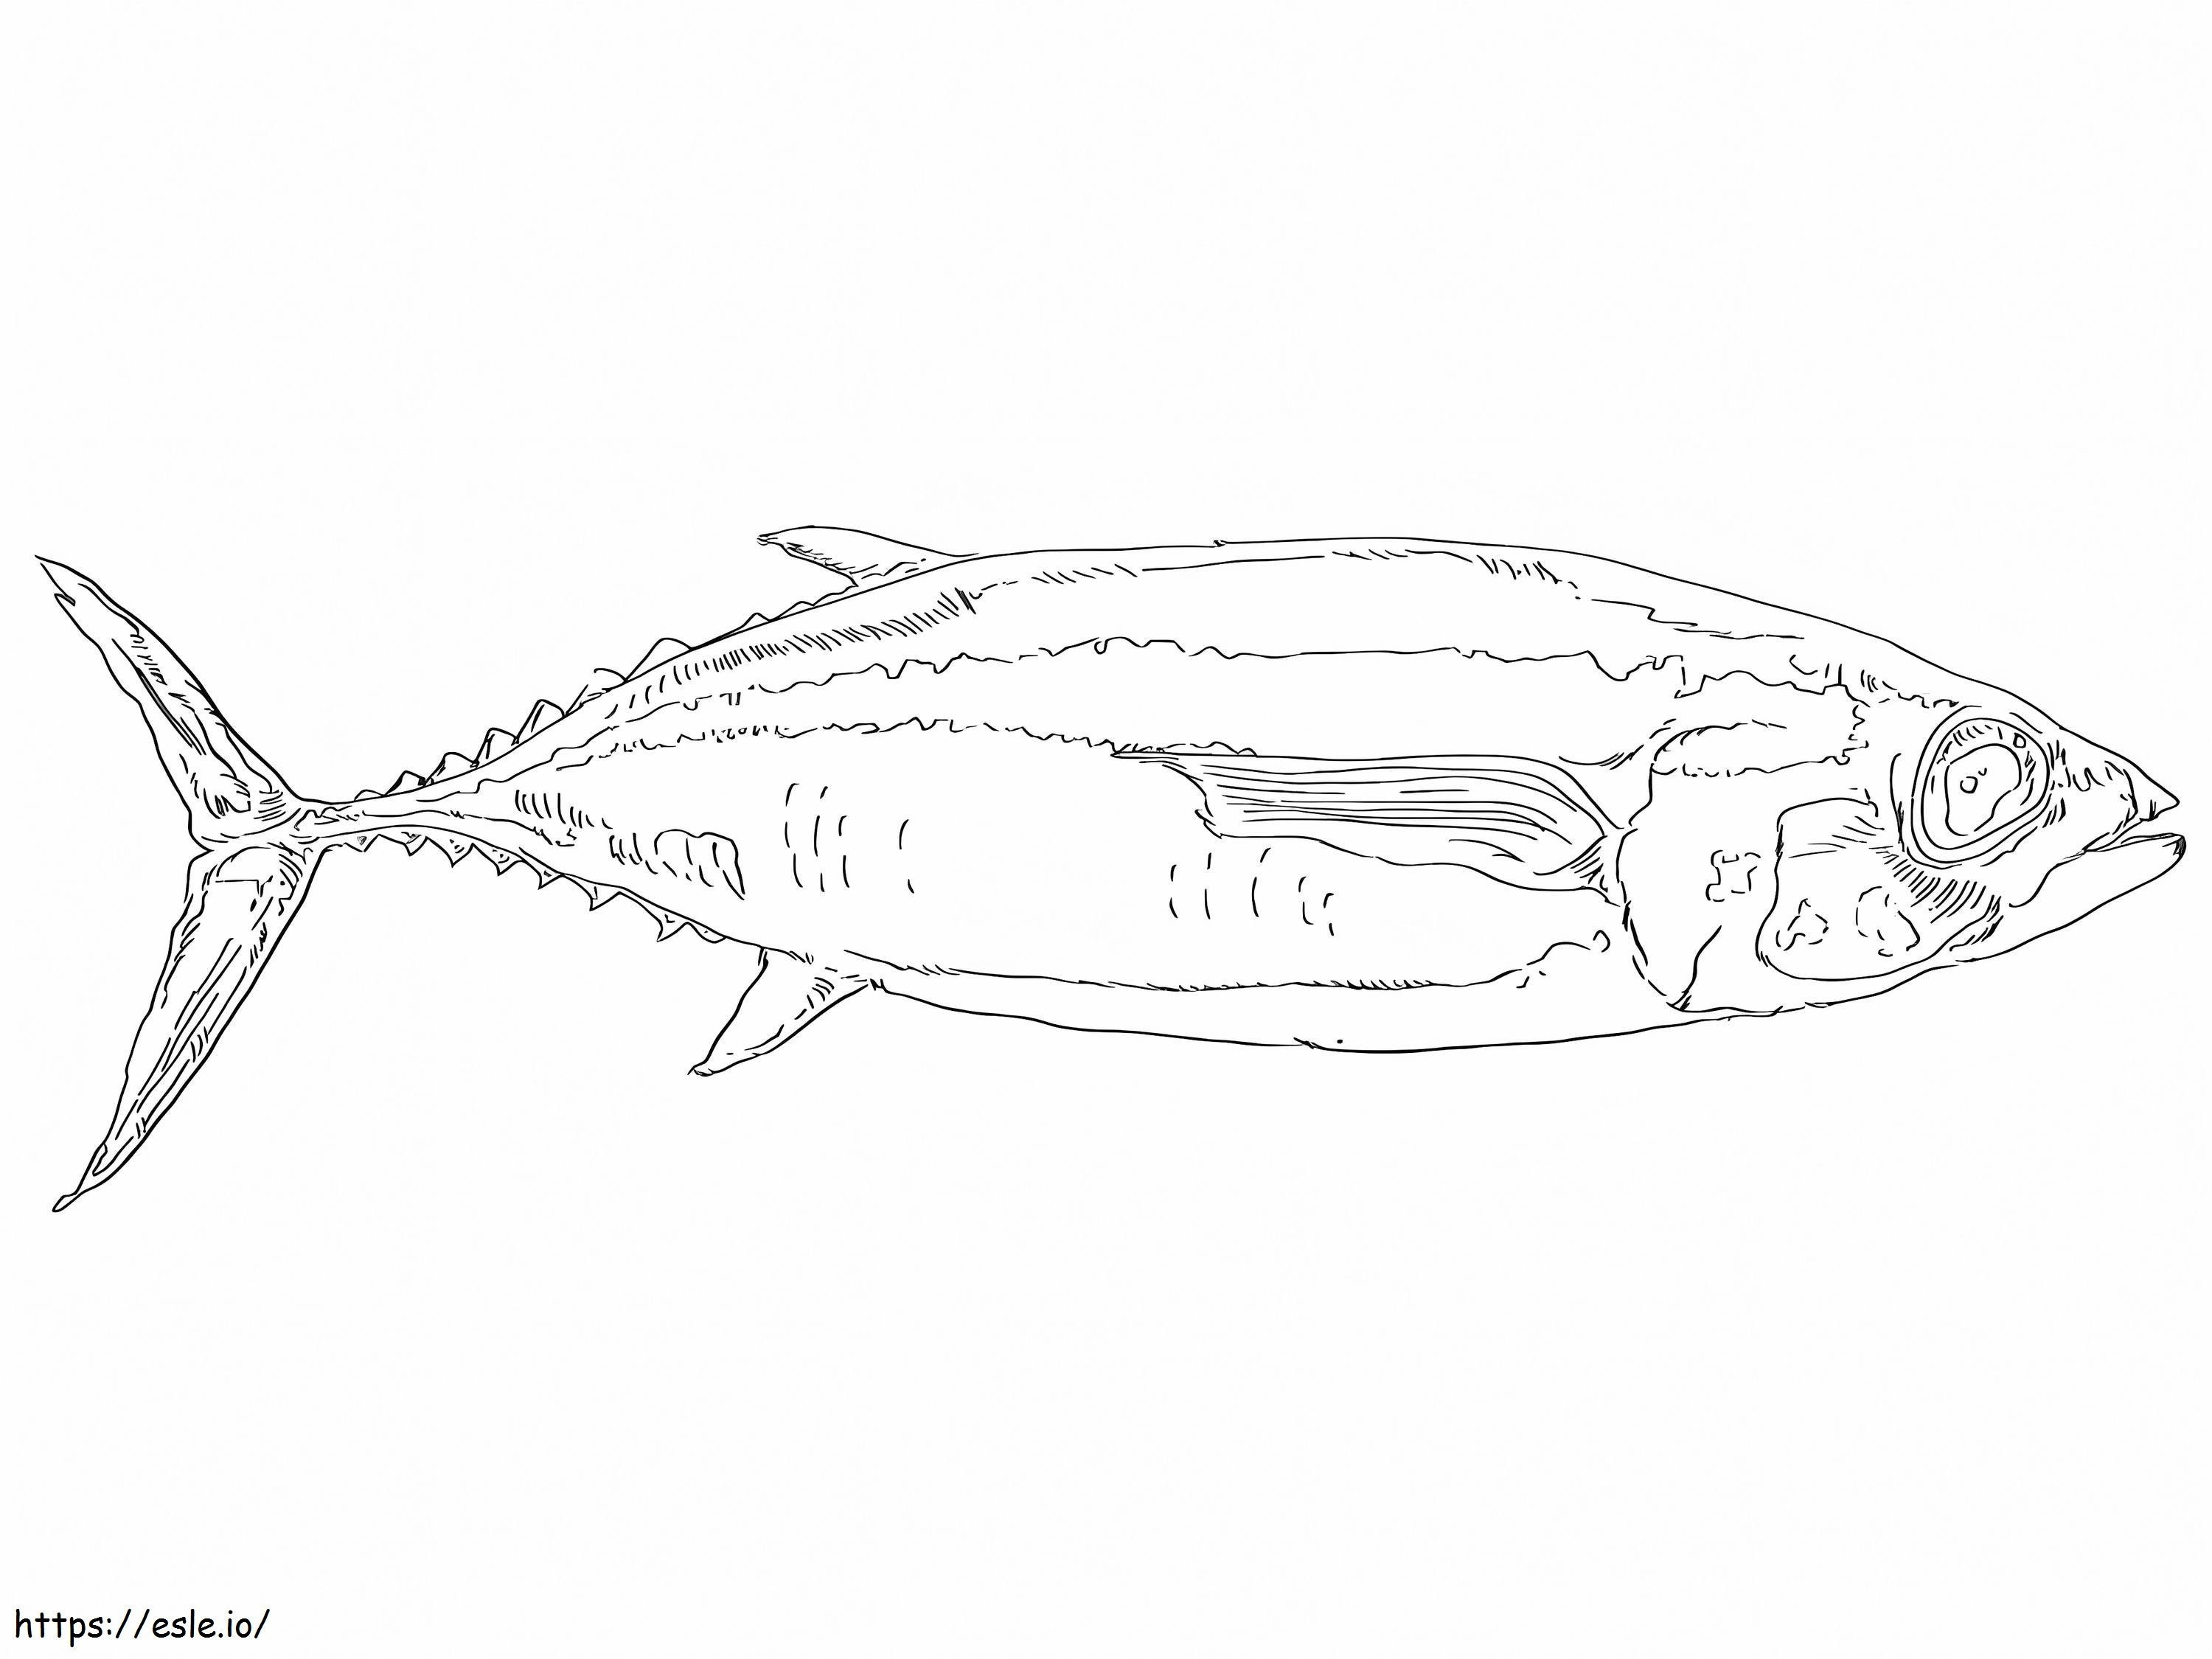 Weißer Thunfisch ausmalbilder